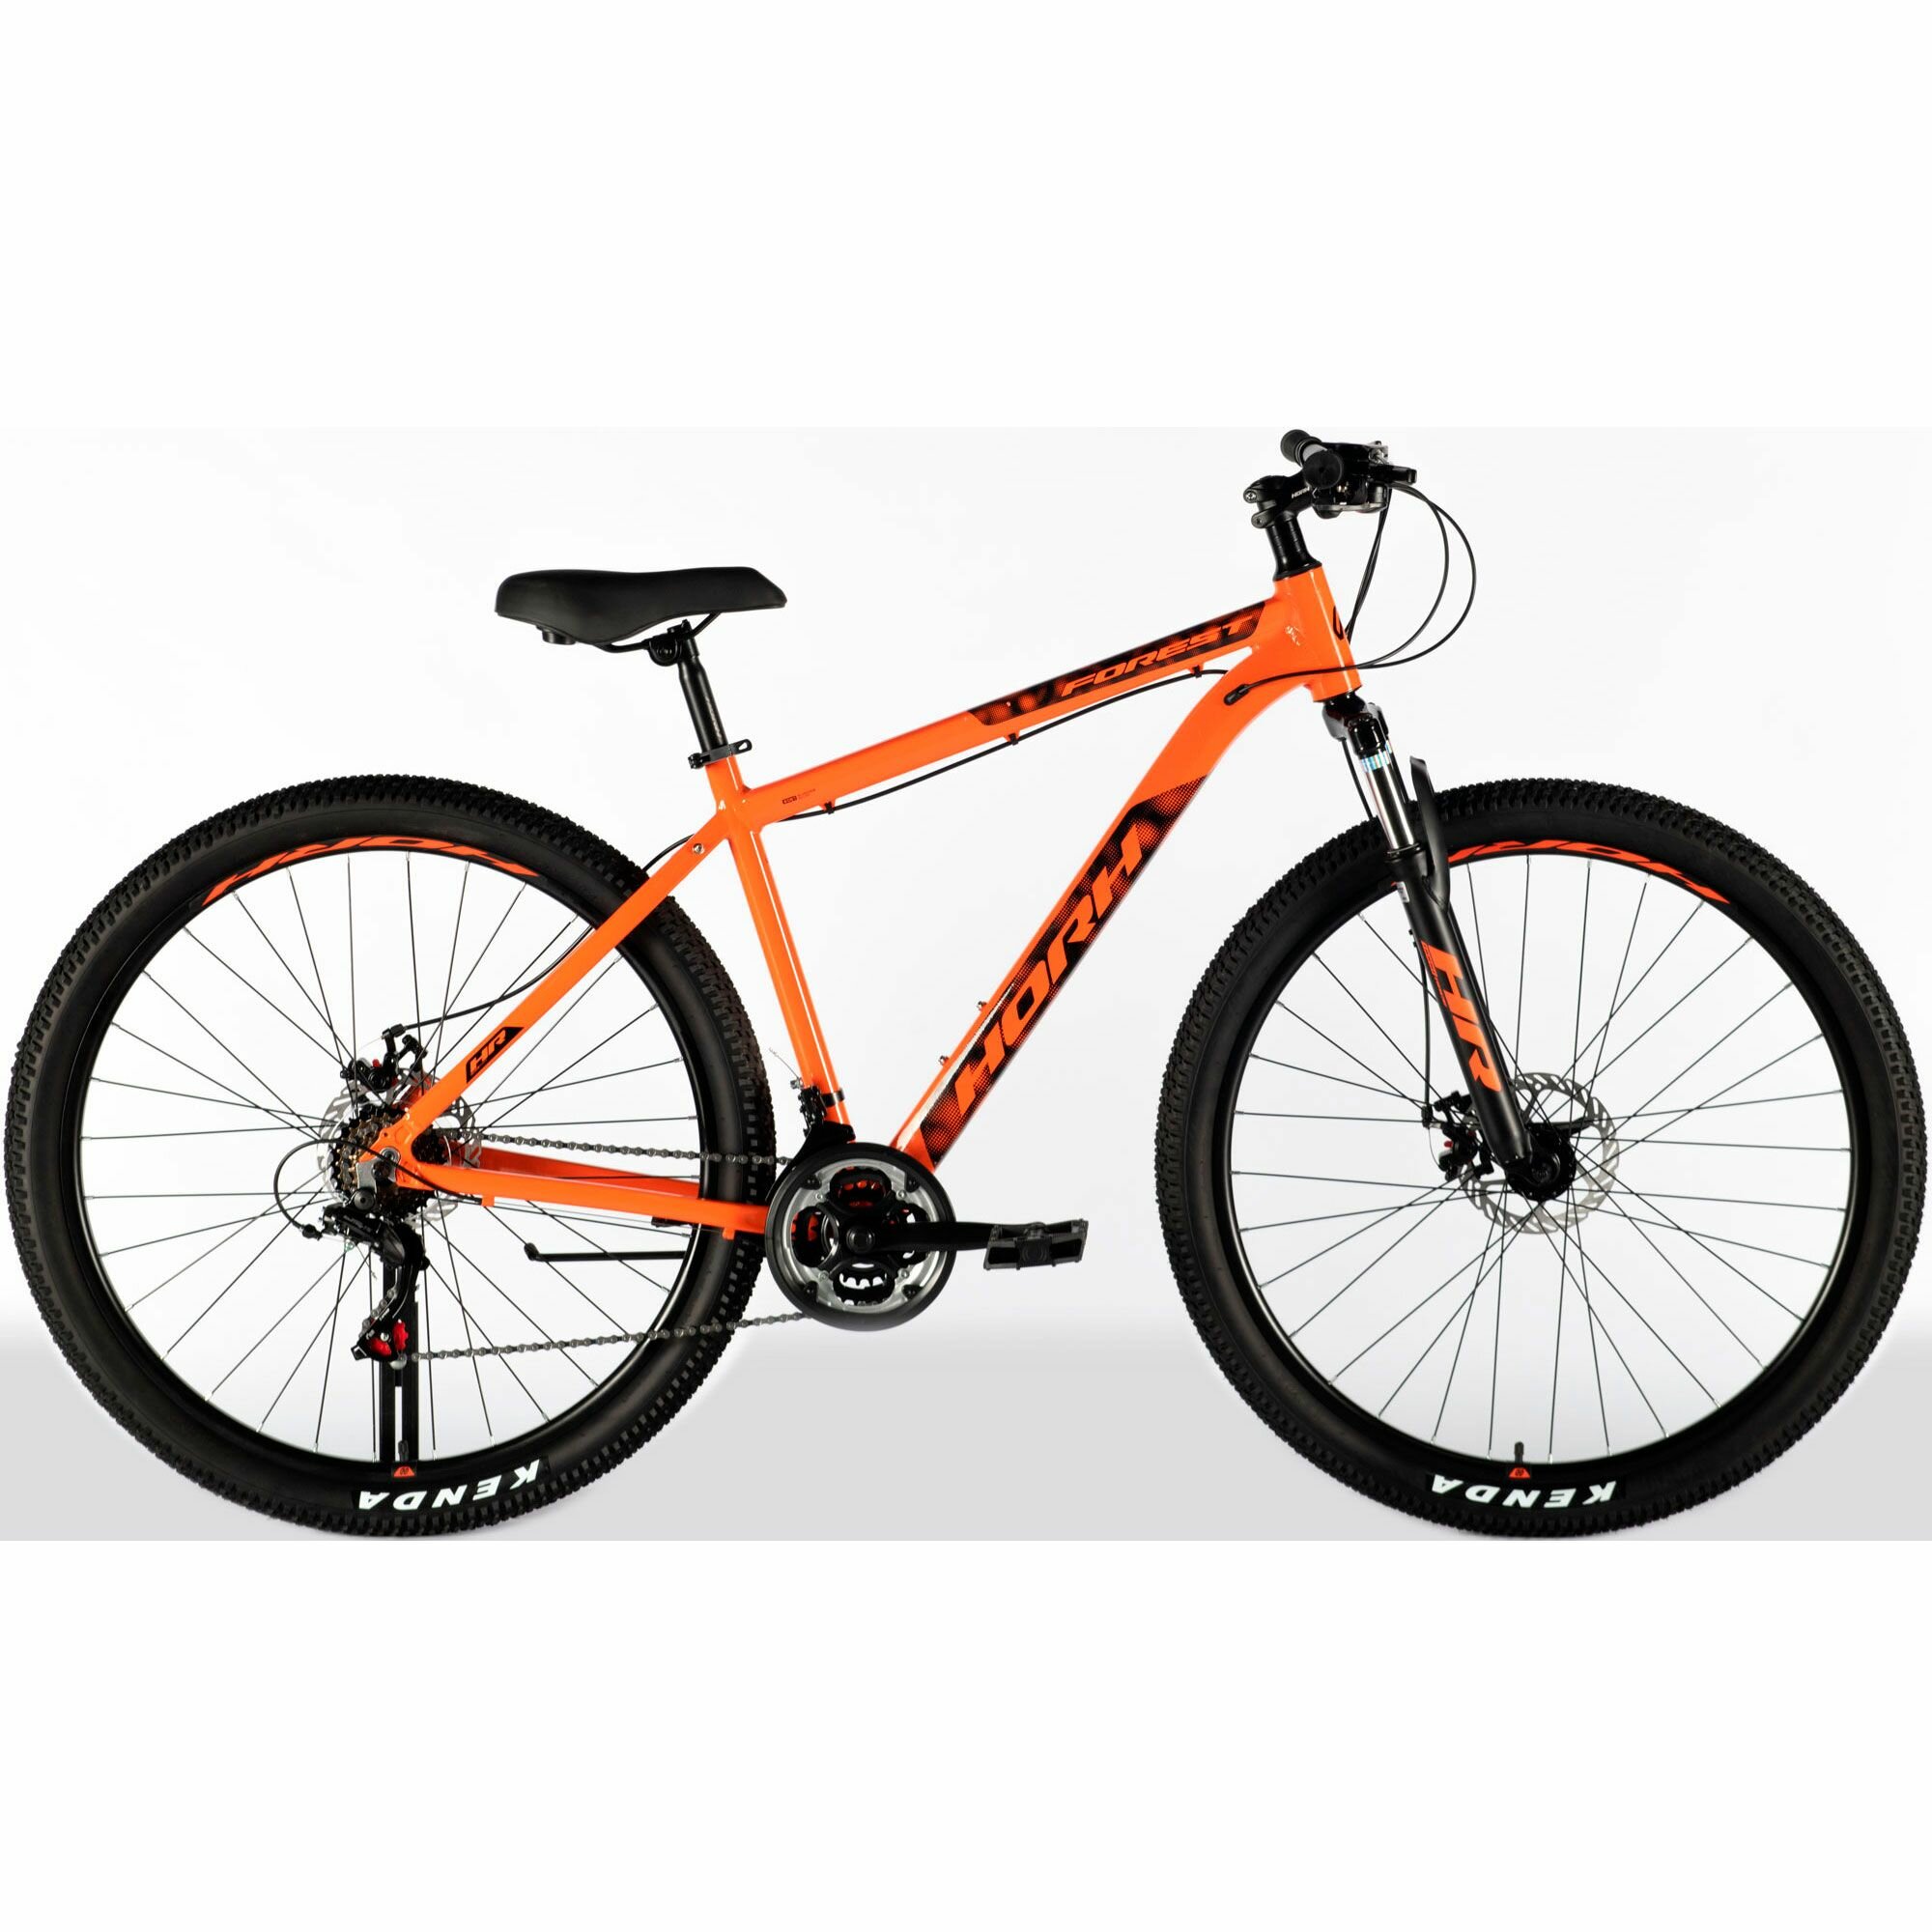 Велосипед горный HORH FOREST FMD 9.0 29 (2024), хардтейл, взрослый, мужской, алюминиевая рама, 21 скорость, дисковые механические тормоза, цвет Orange-Black, оранжевый/черный цвет, размер рамы 21", для роста 185-195 см